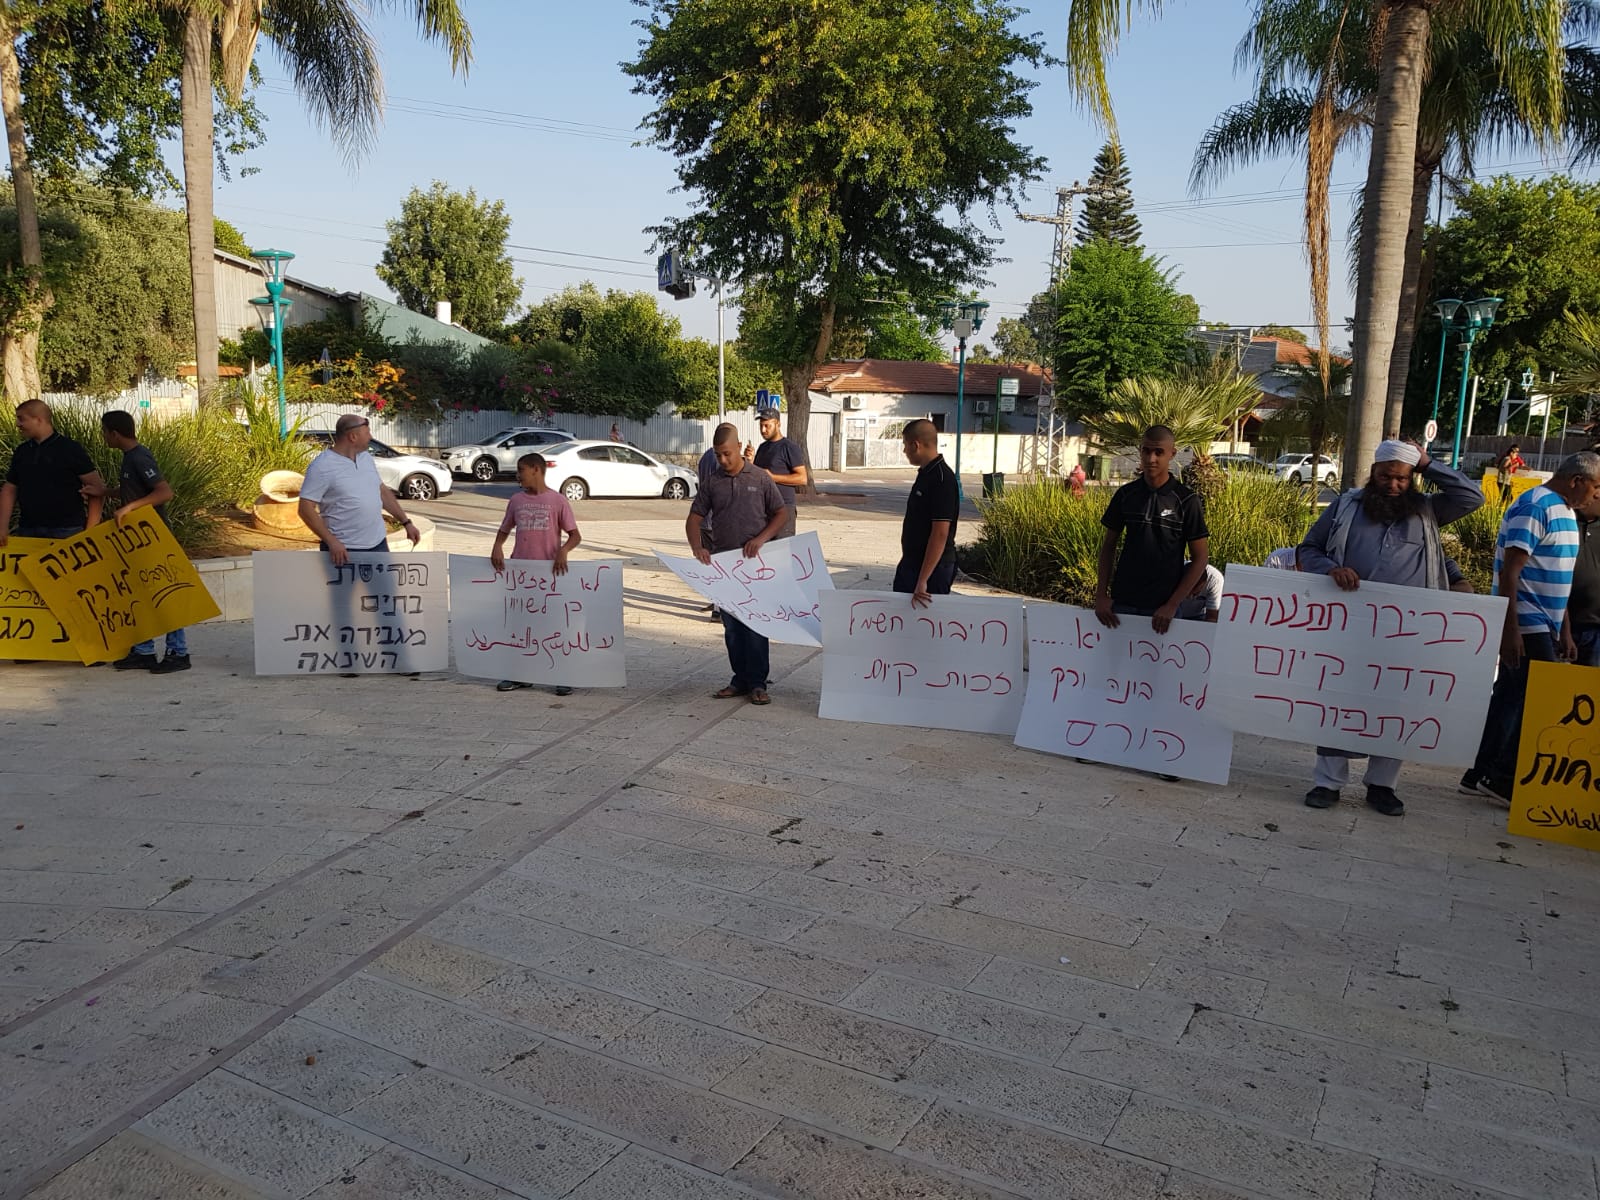 اللد : وقفة احتجاجية ضد سياسة هدم البيوت العربية امام قصر الثقافة 